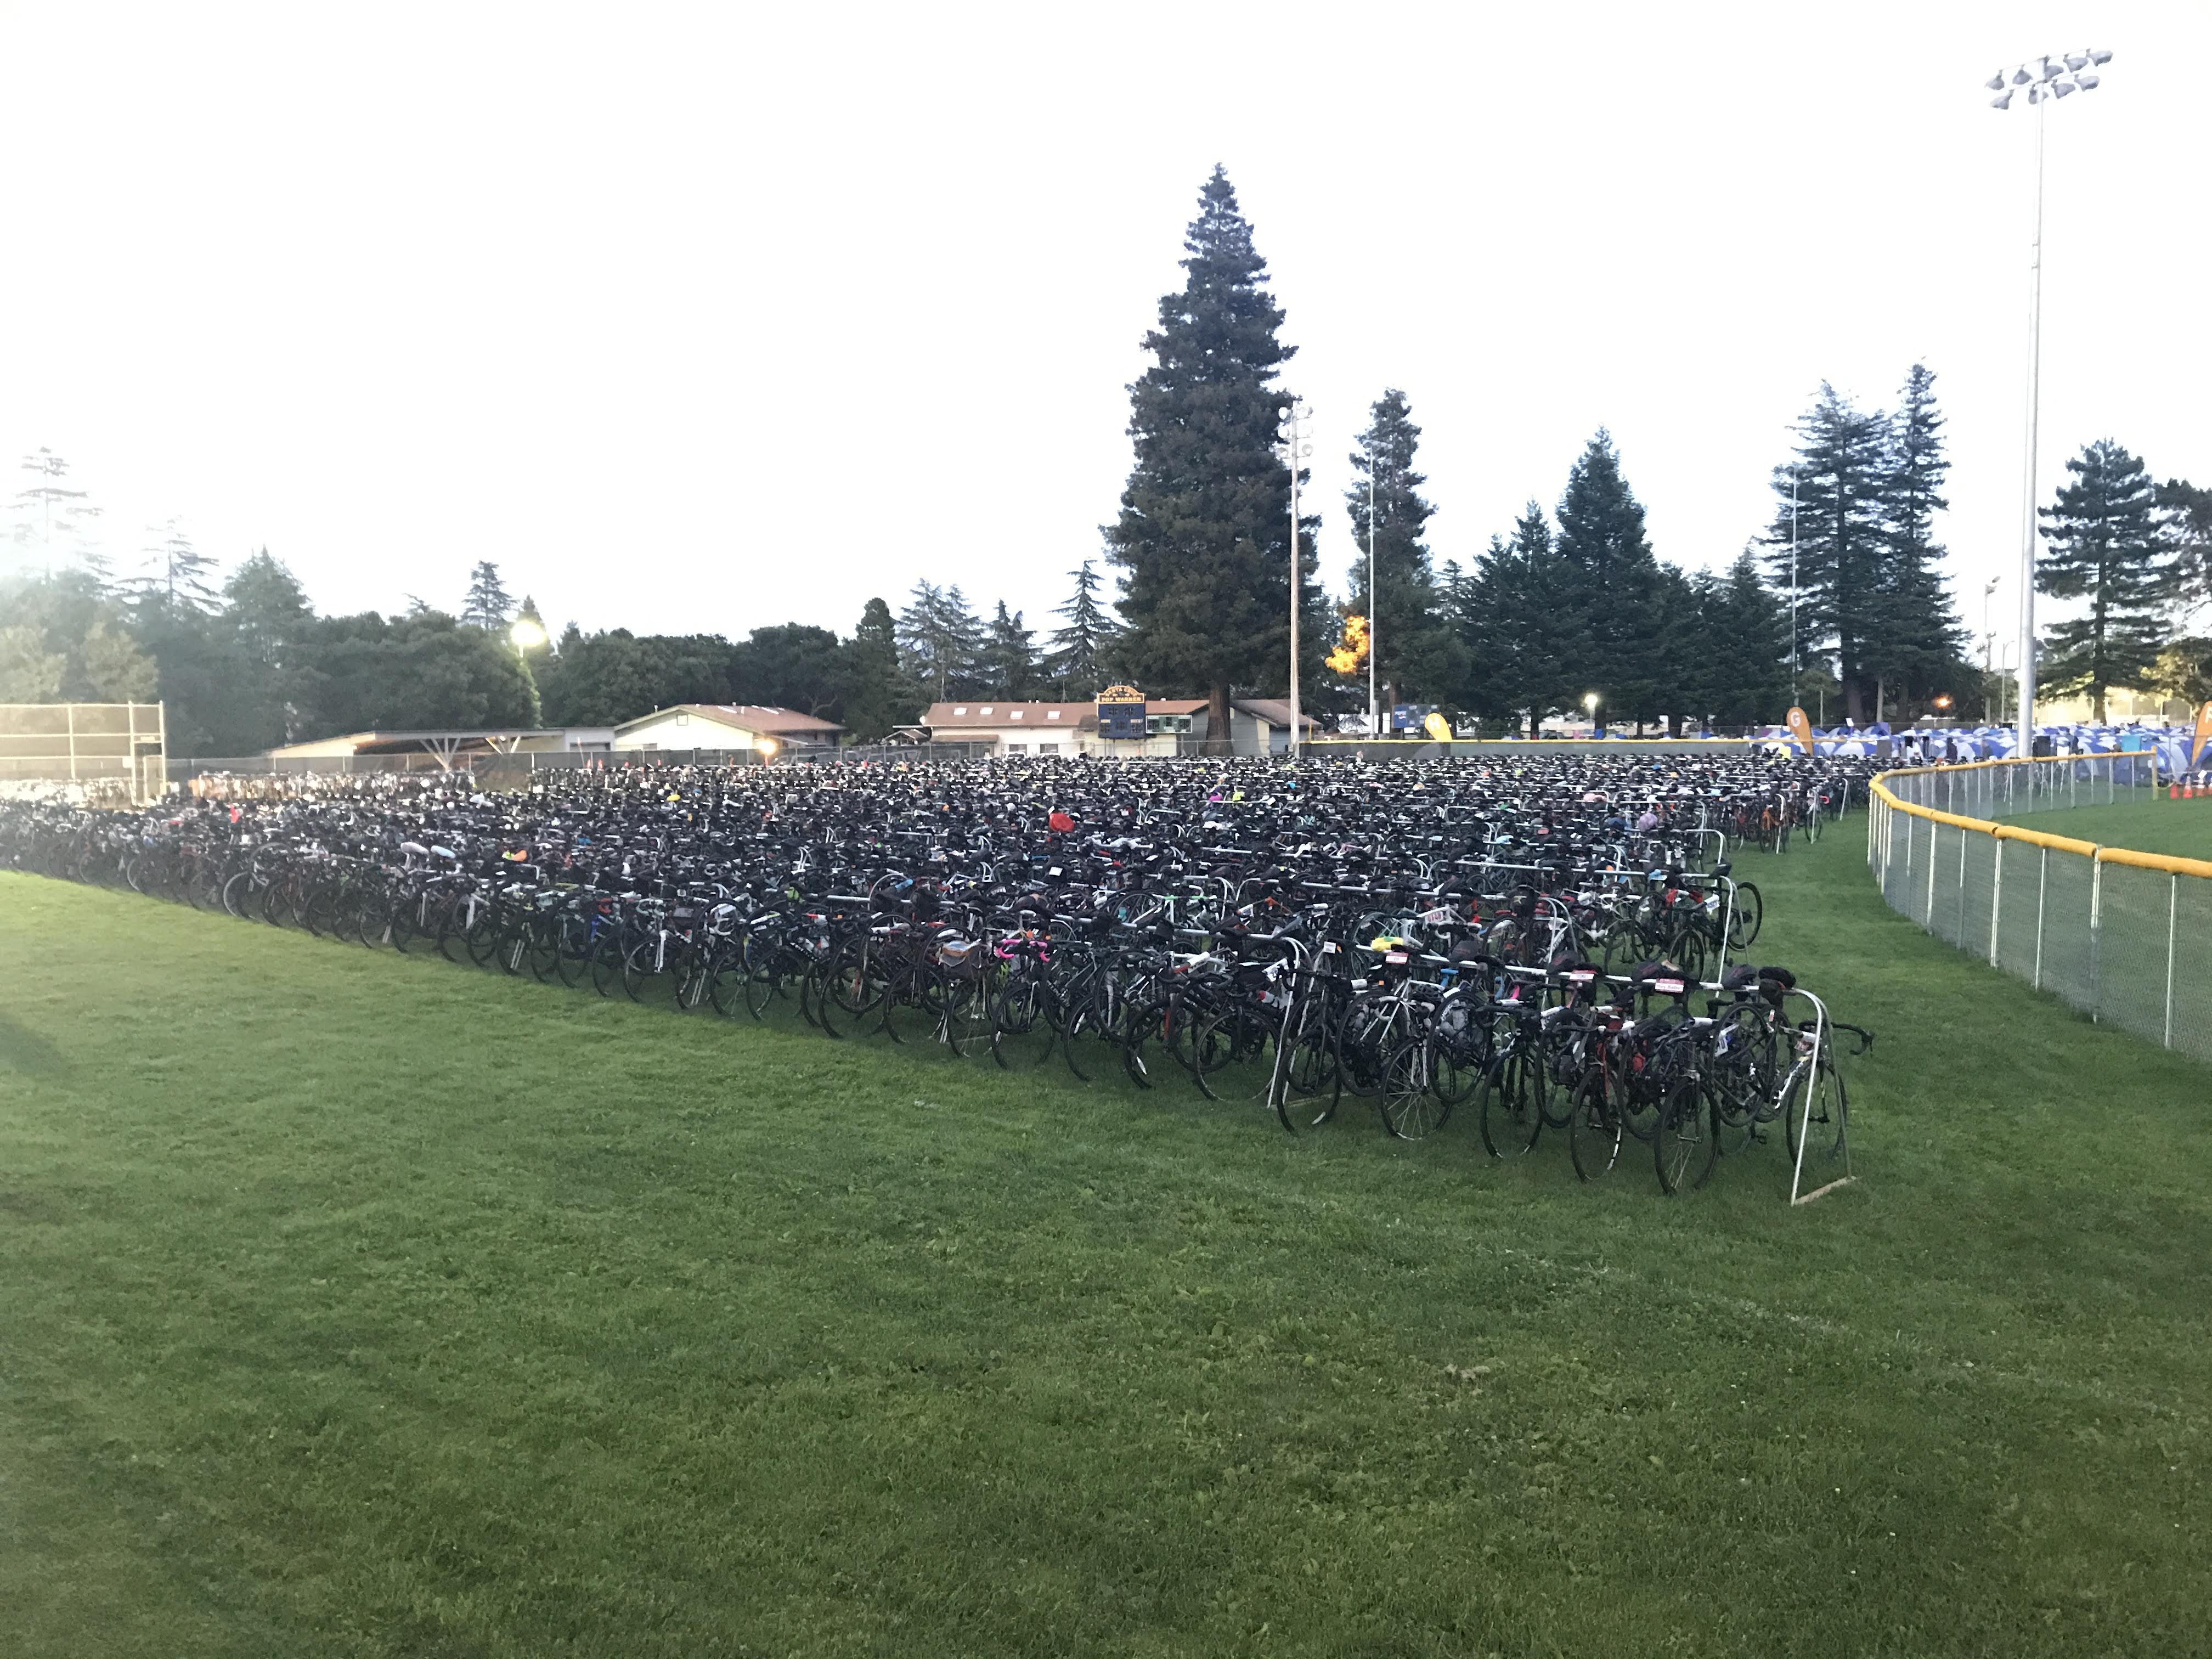 Full bike parking